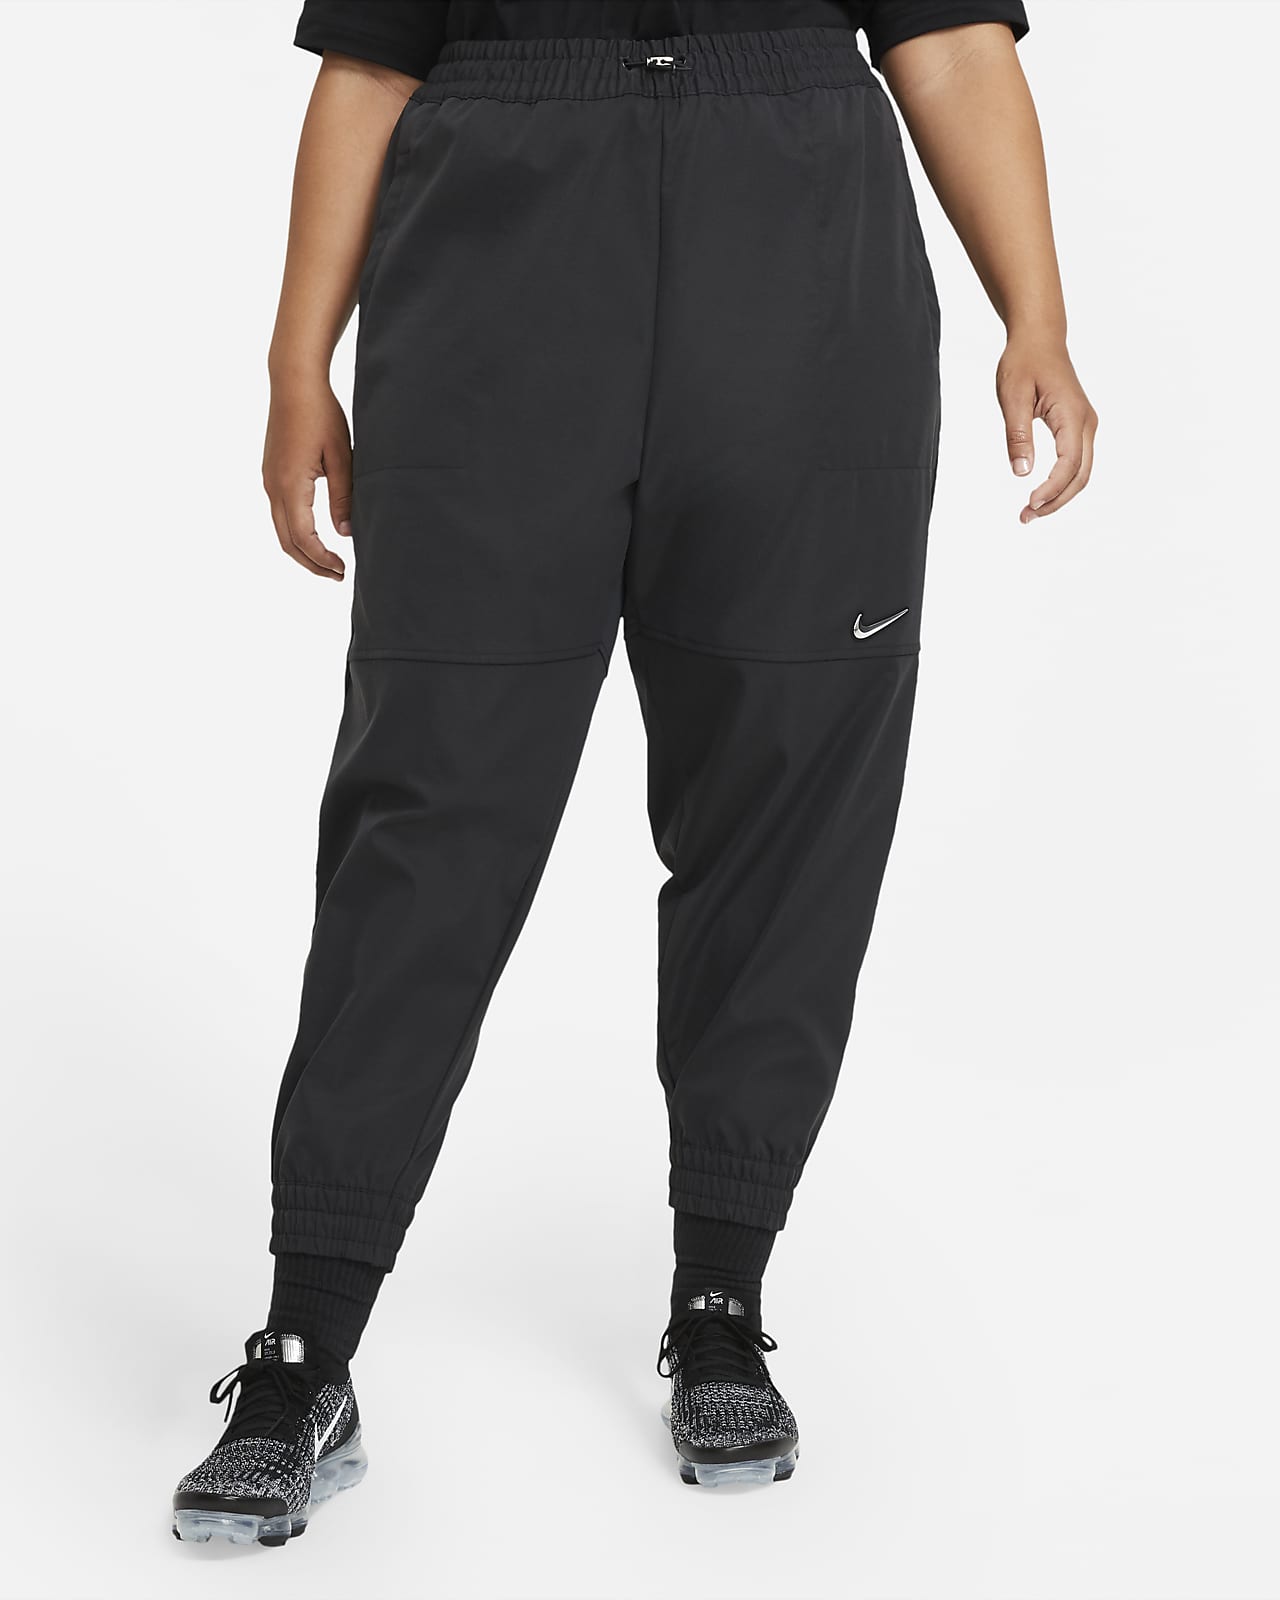 Nike Sportswear Swoosh Women's Trousers (Plus Size)